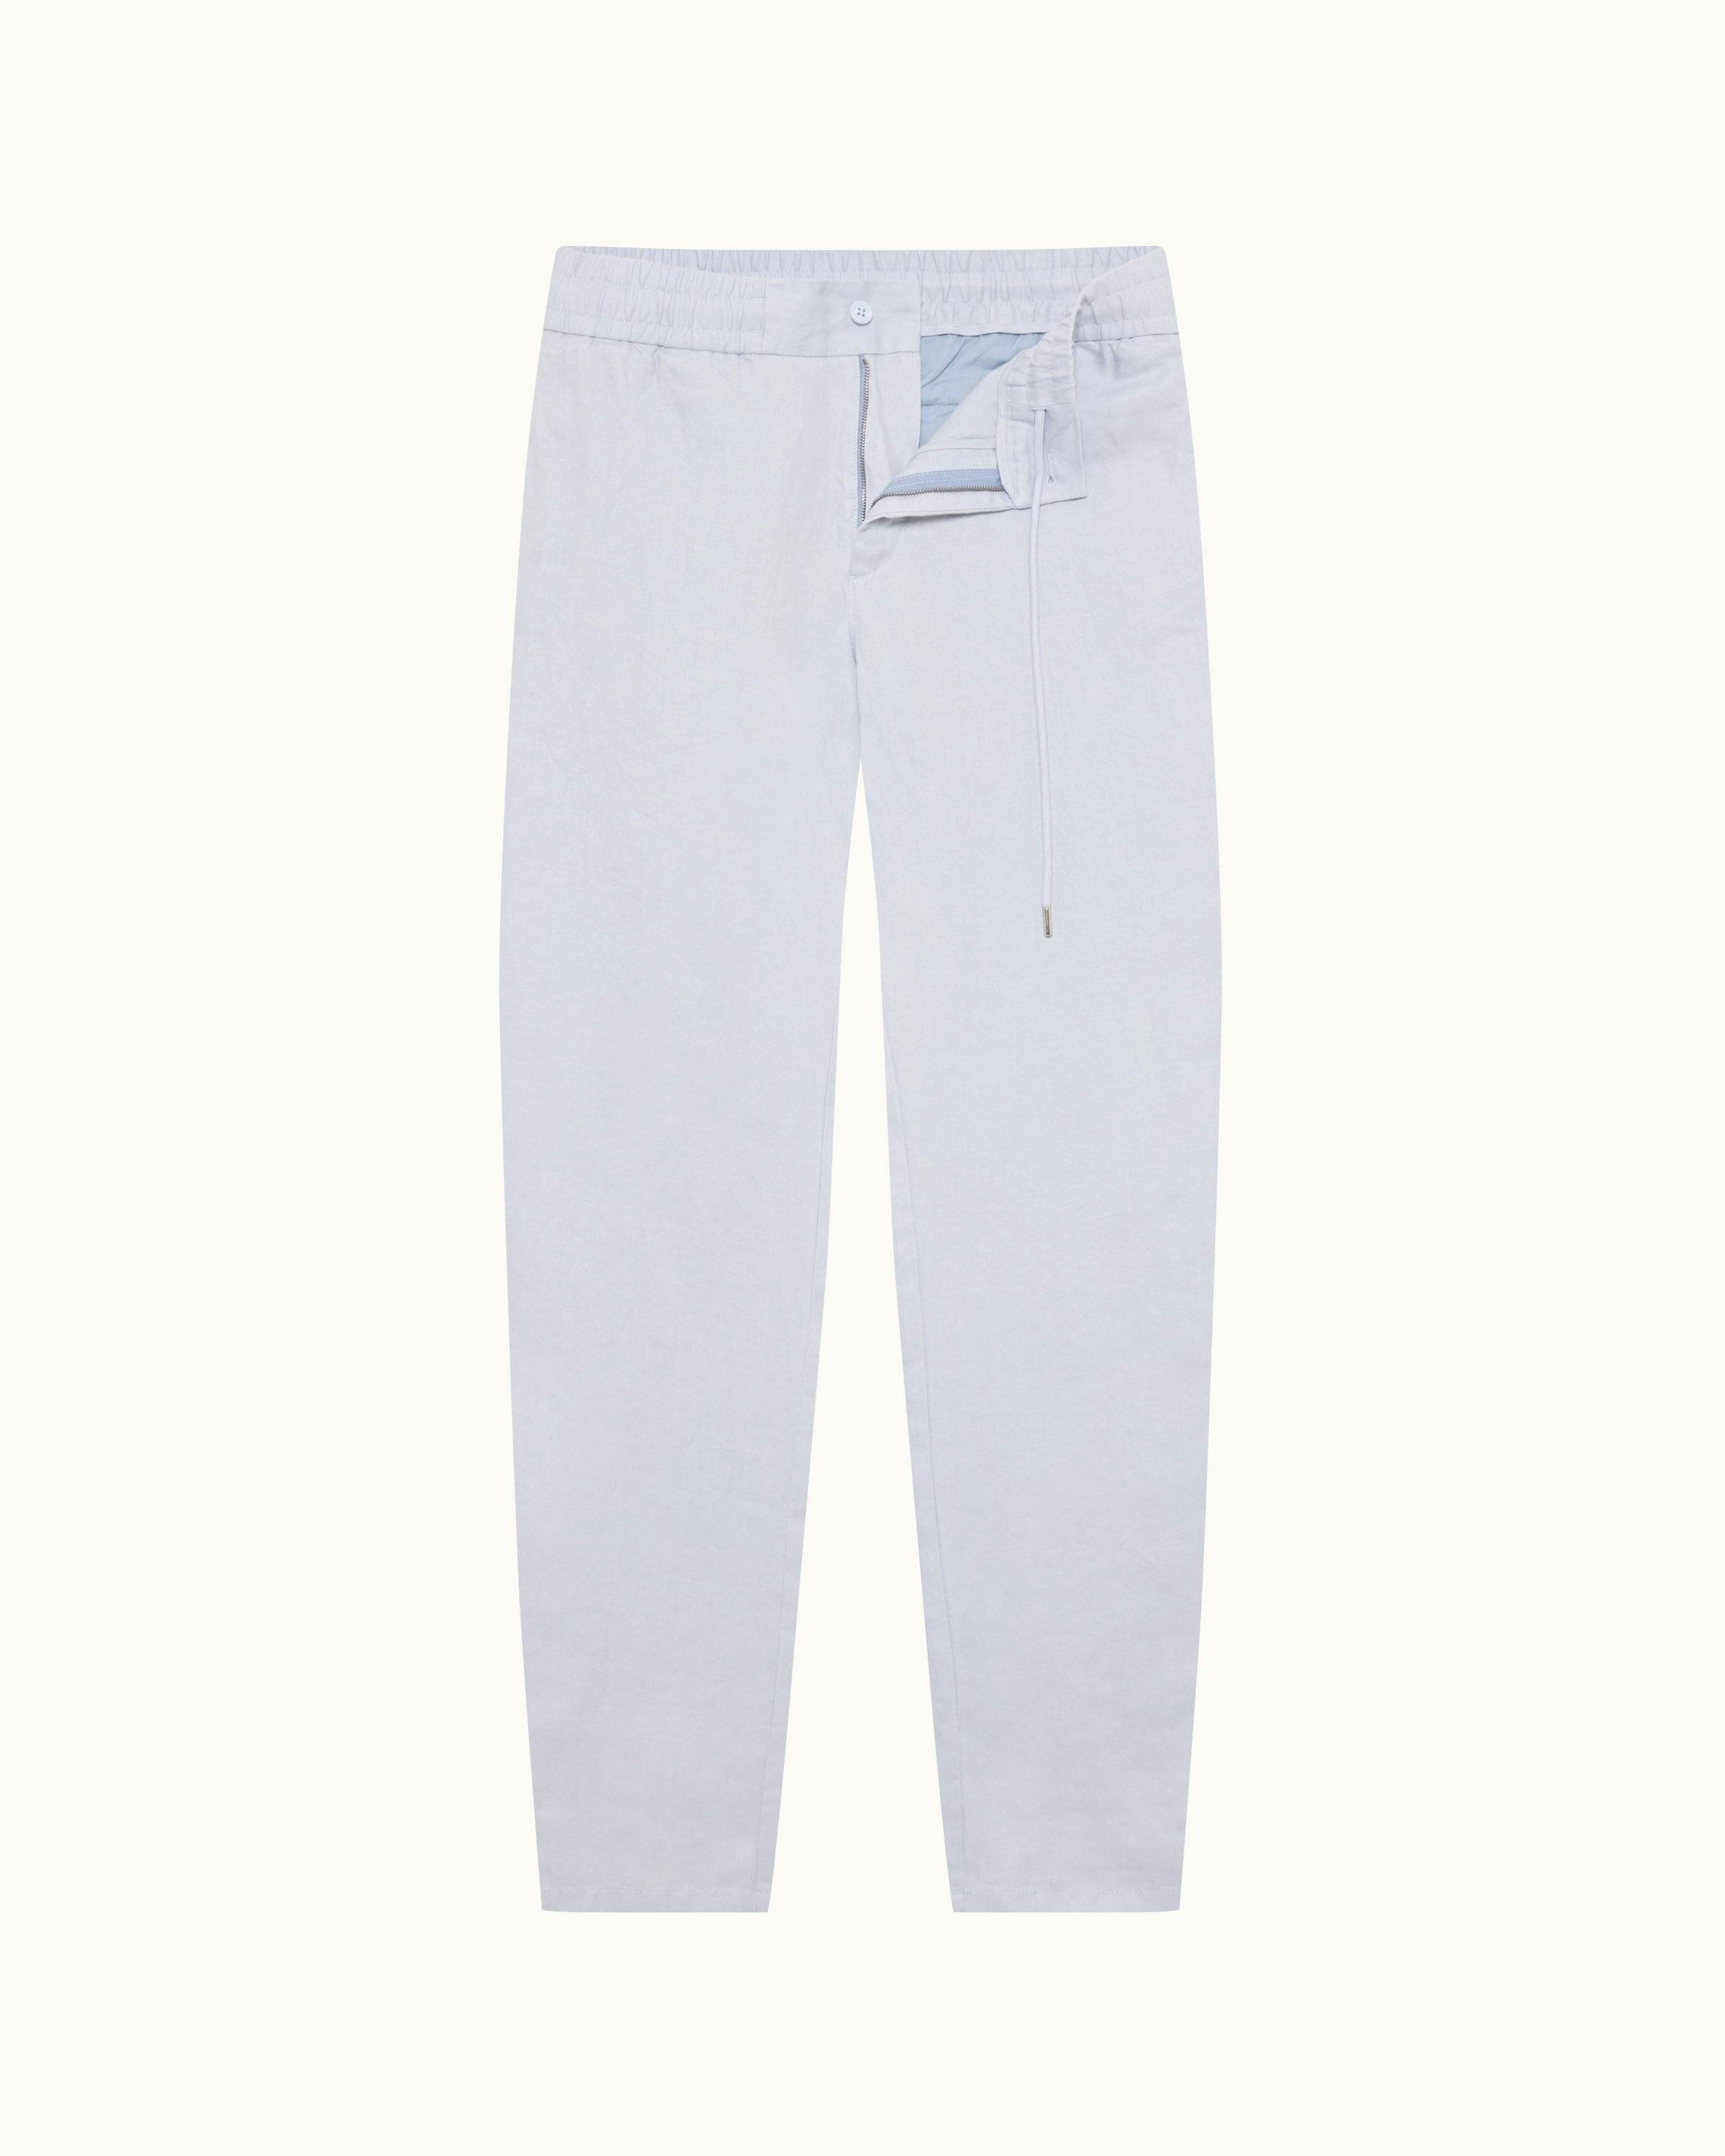 Bespoke white summer trousers – Barrington Ayre